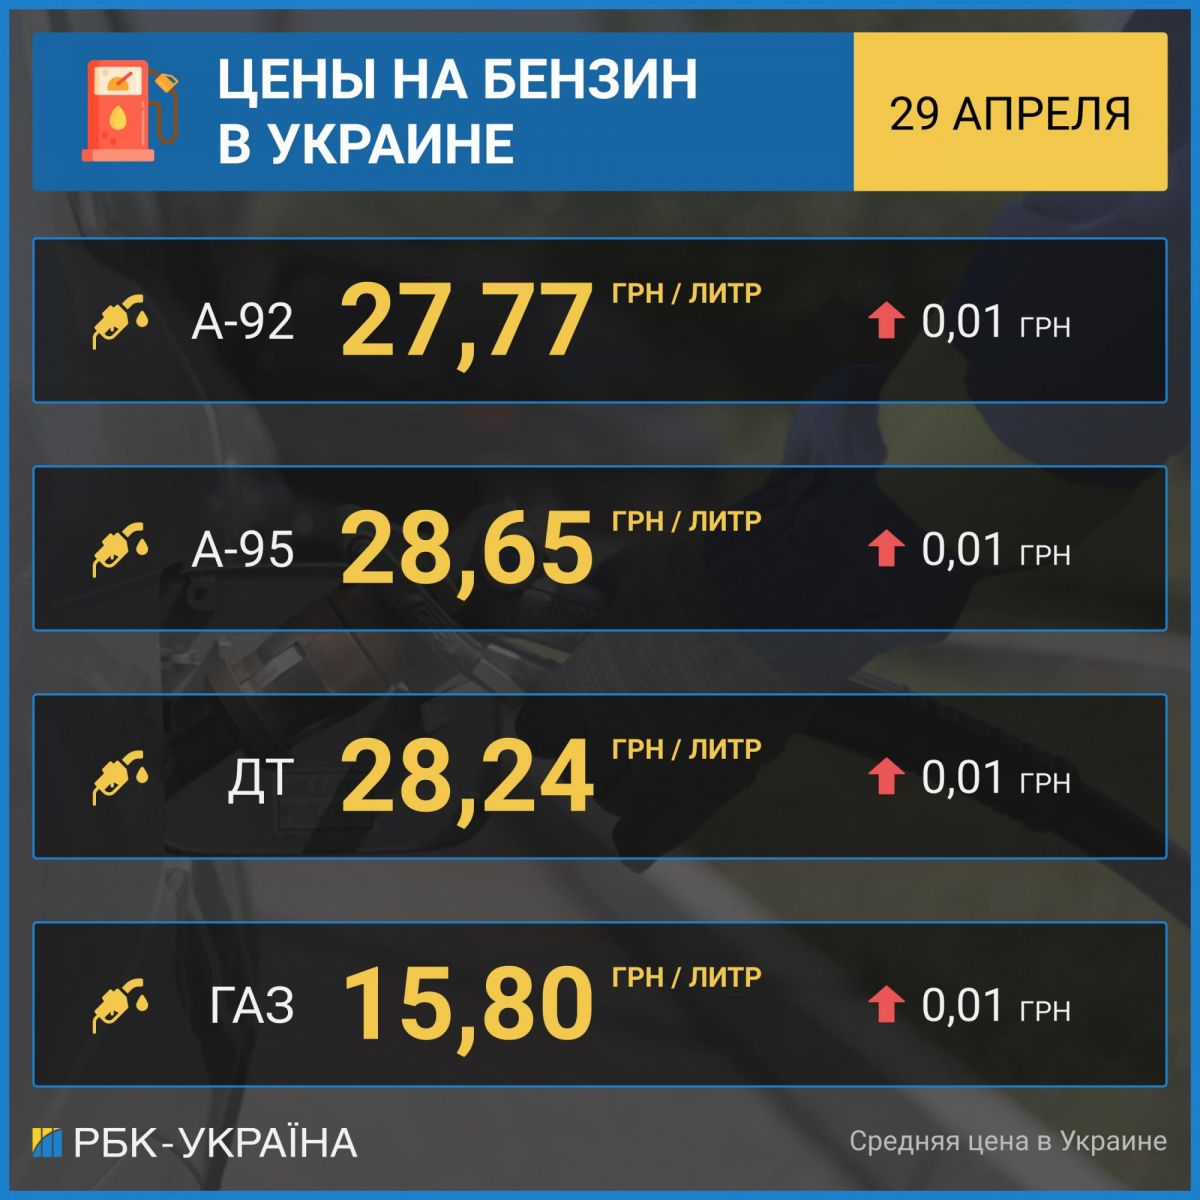 Роздрібні ціни на бензин А-95 на АЗС в Україні. Таблиця: РБК-Україна